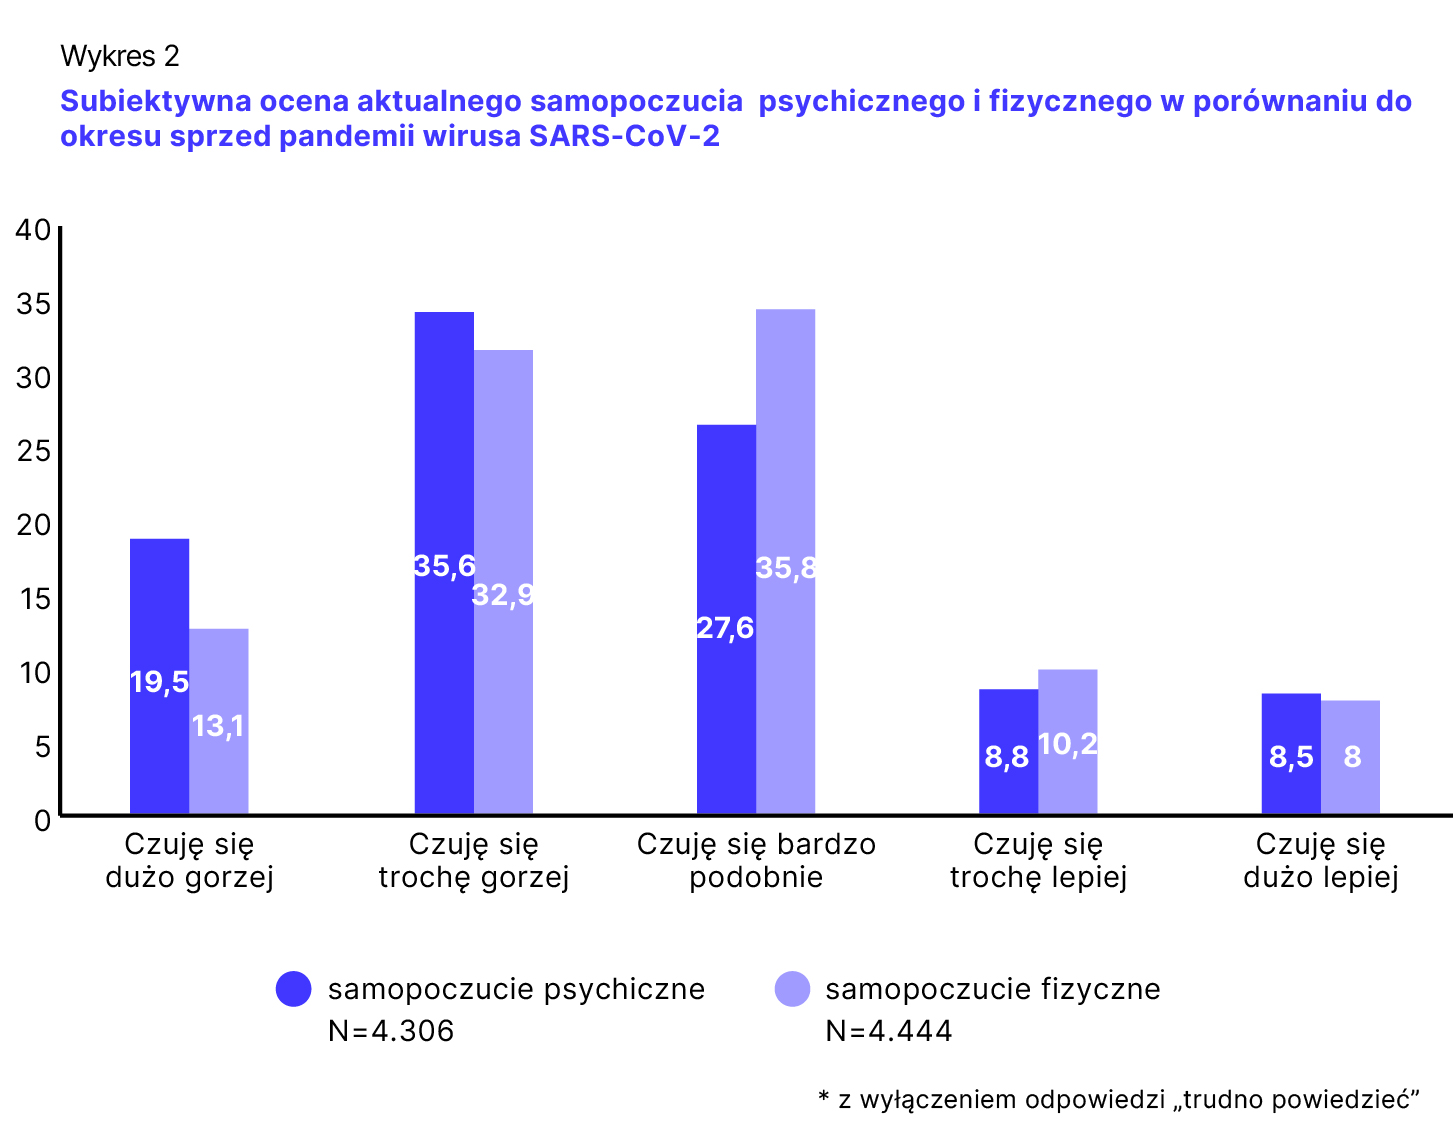 Wykres 2. Subiketywna ocena aktualnego samopoczucia psychicznego i fizycznego w porównaniu do okresu sprzed pandemii wirusa SARS-CoV-2